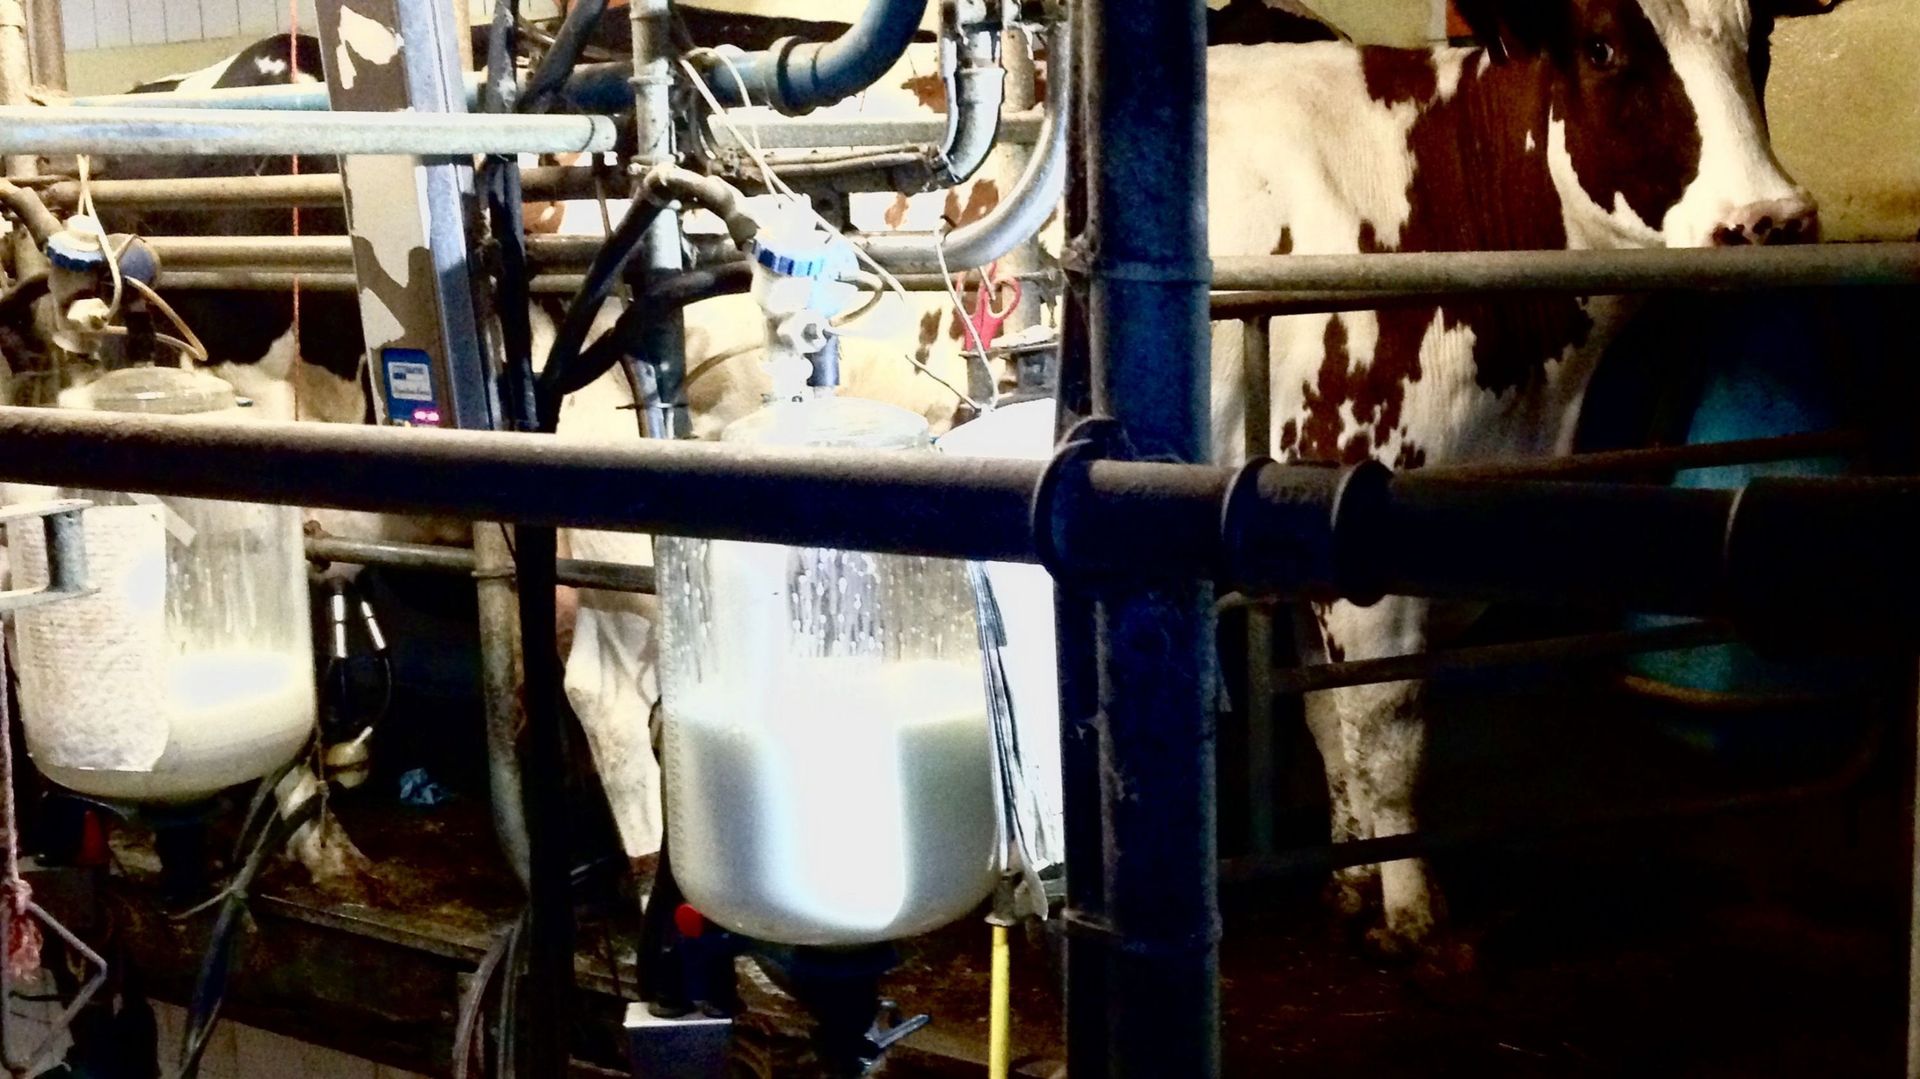 delestage-le-risque-de-penurie-d-electricite-inquiete-ce-producteur-de-lait